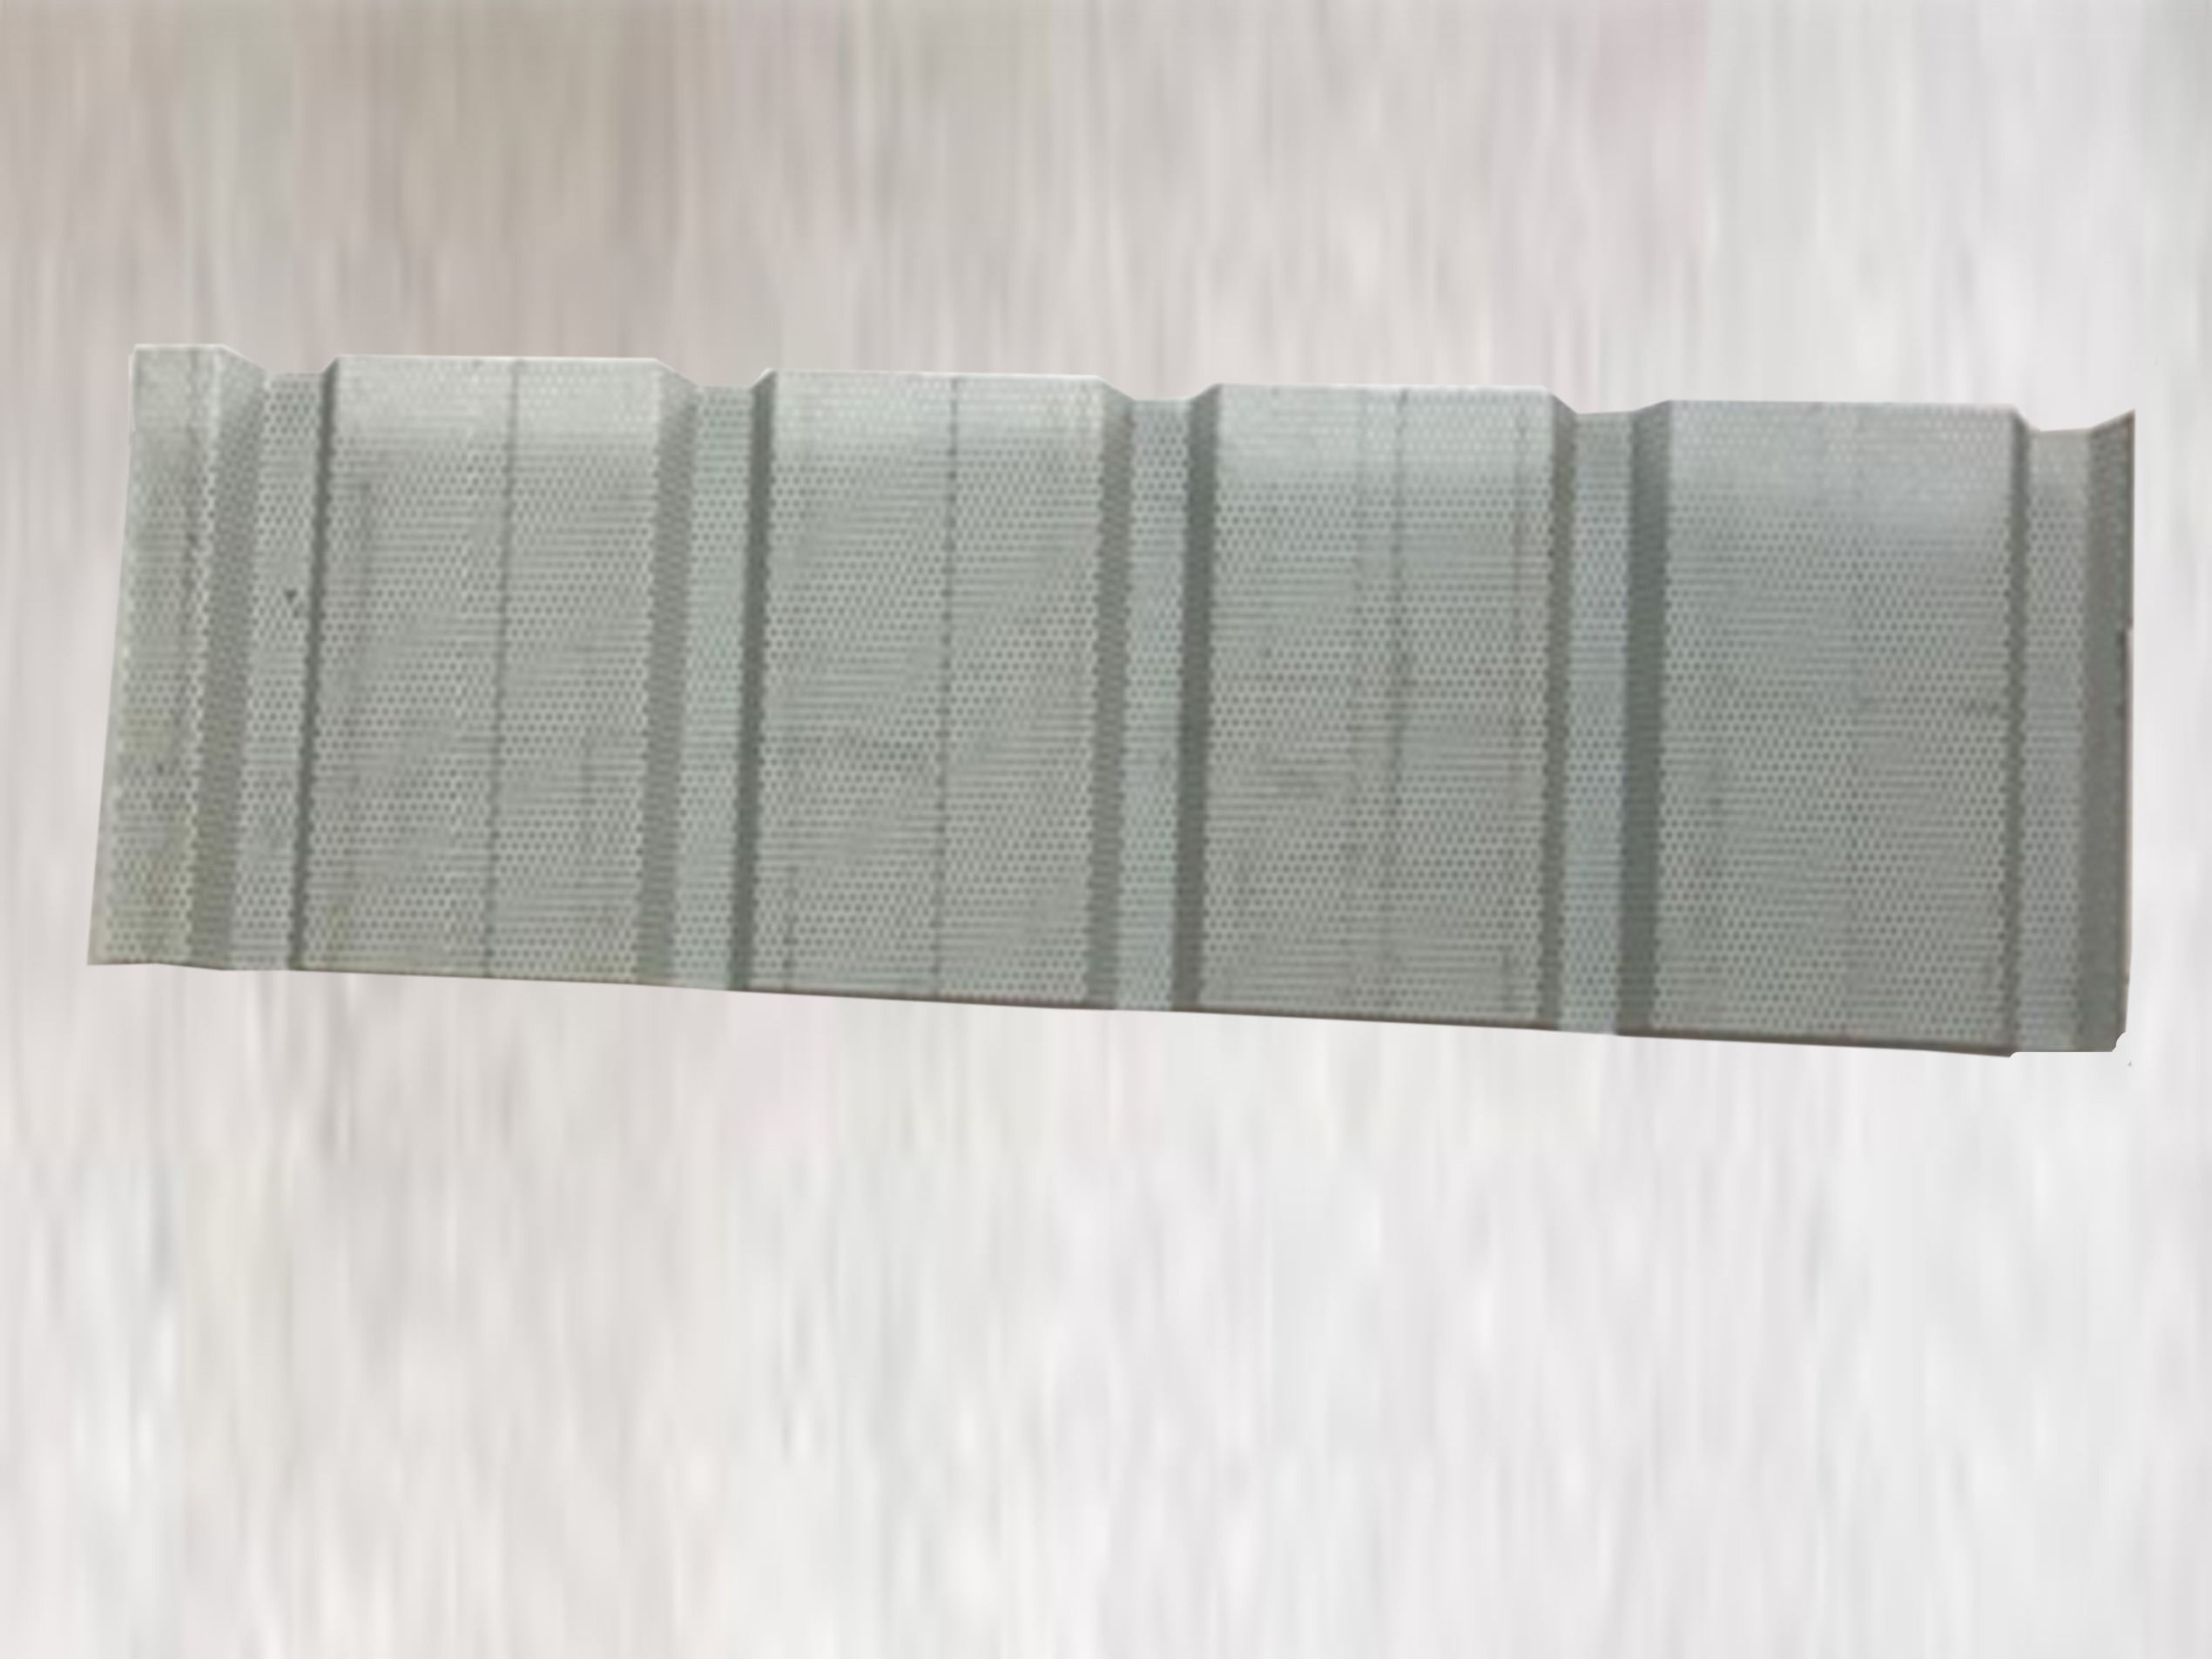 YX38-150-900梯形幕墙板 铝镁锰穿孔板 铝镁锰压型板厂家